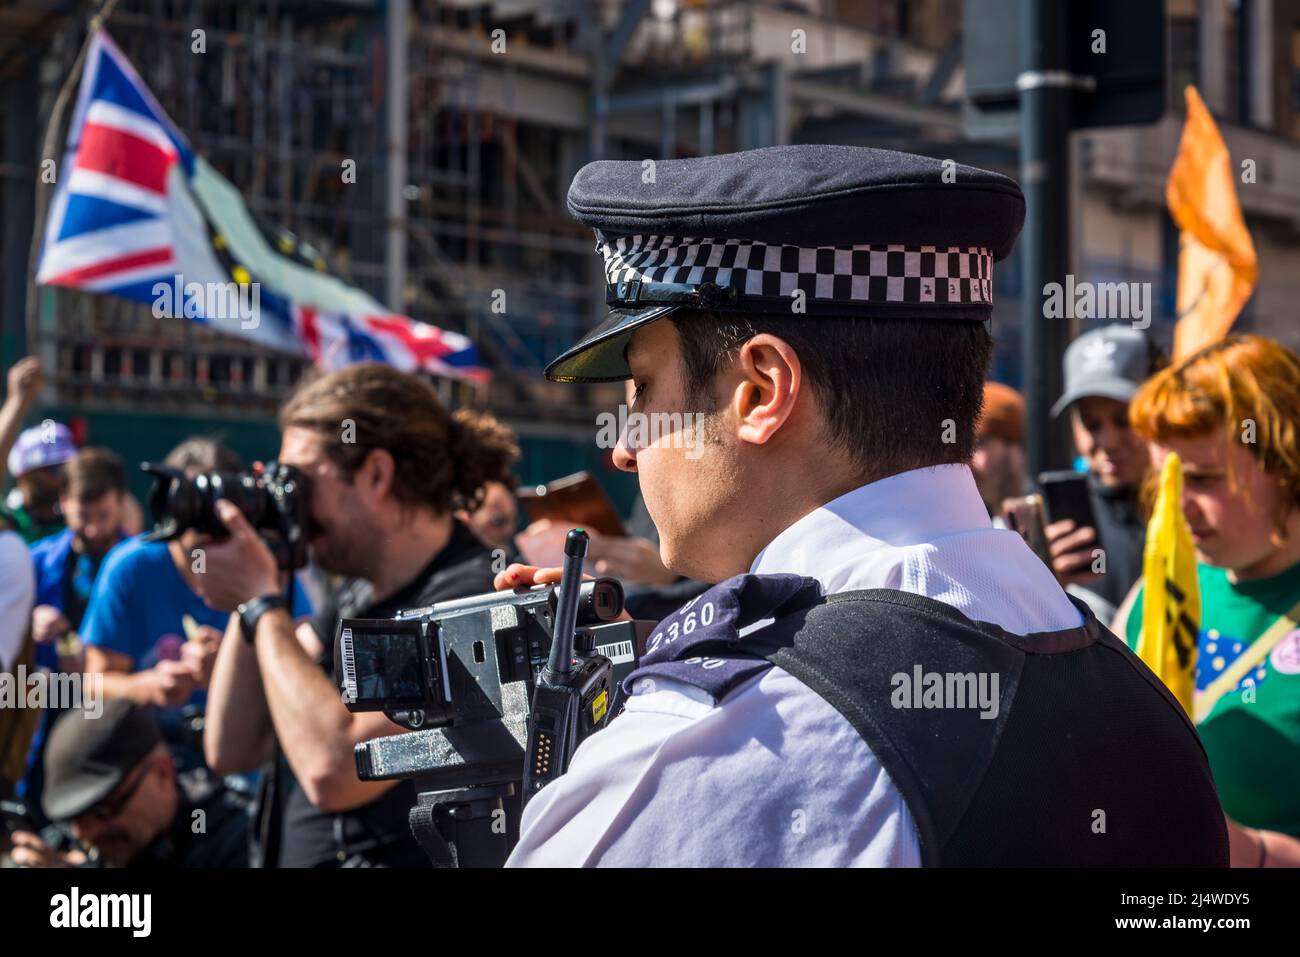 Policier qui filme des manifestants, nous ne serons pas des spectateurs, une manifestation de rébellion d'extinction qui lutte pour la justice climatique, Marble Arch, Londres, Anglais Banque D'Images